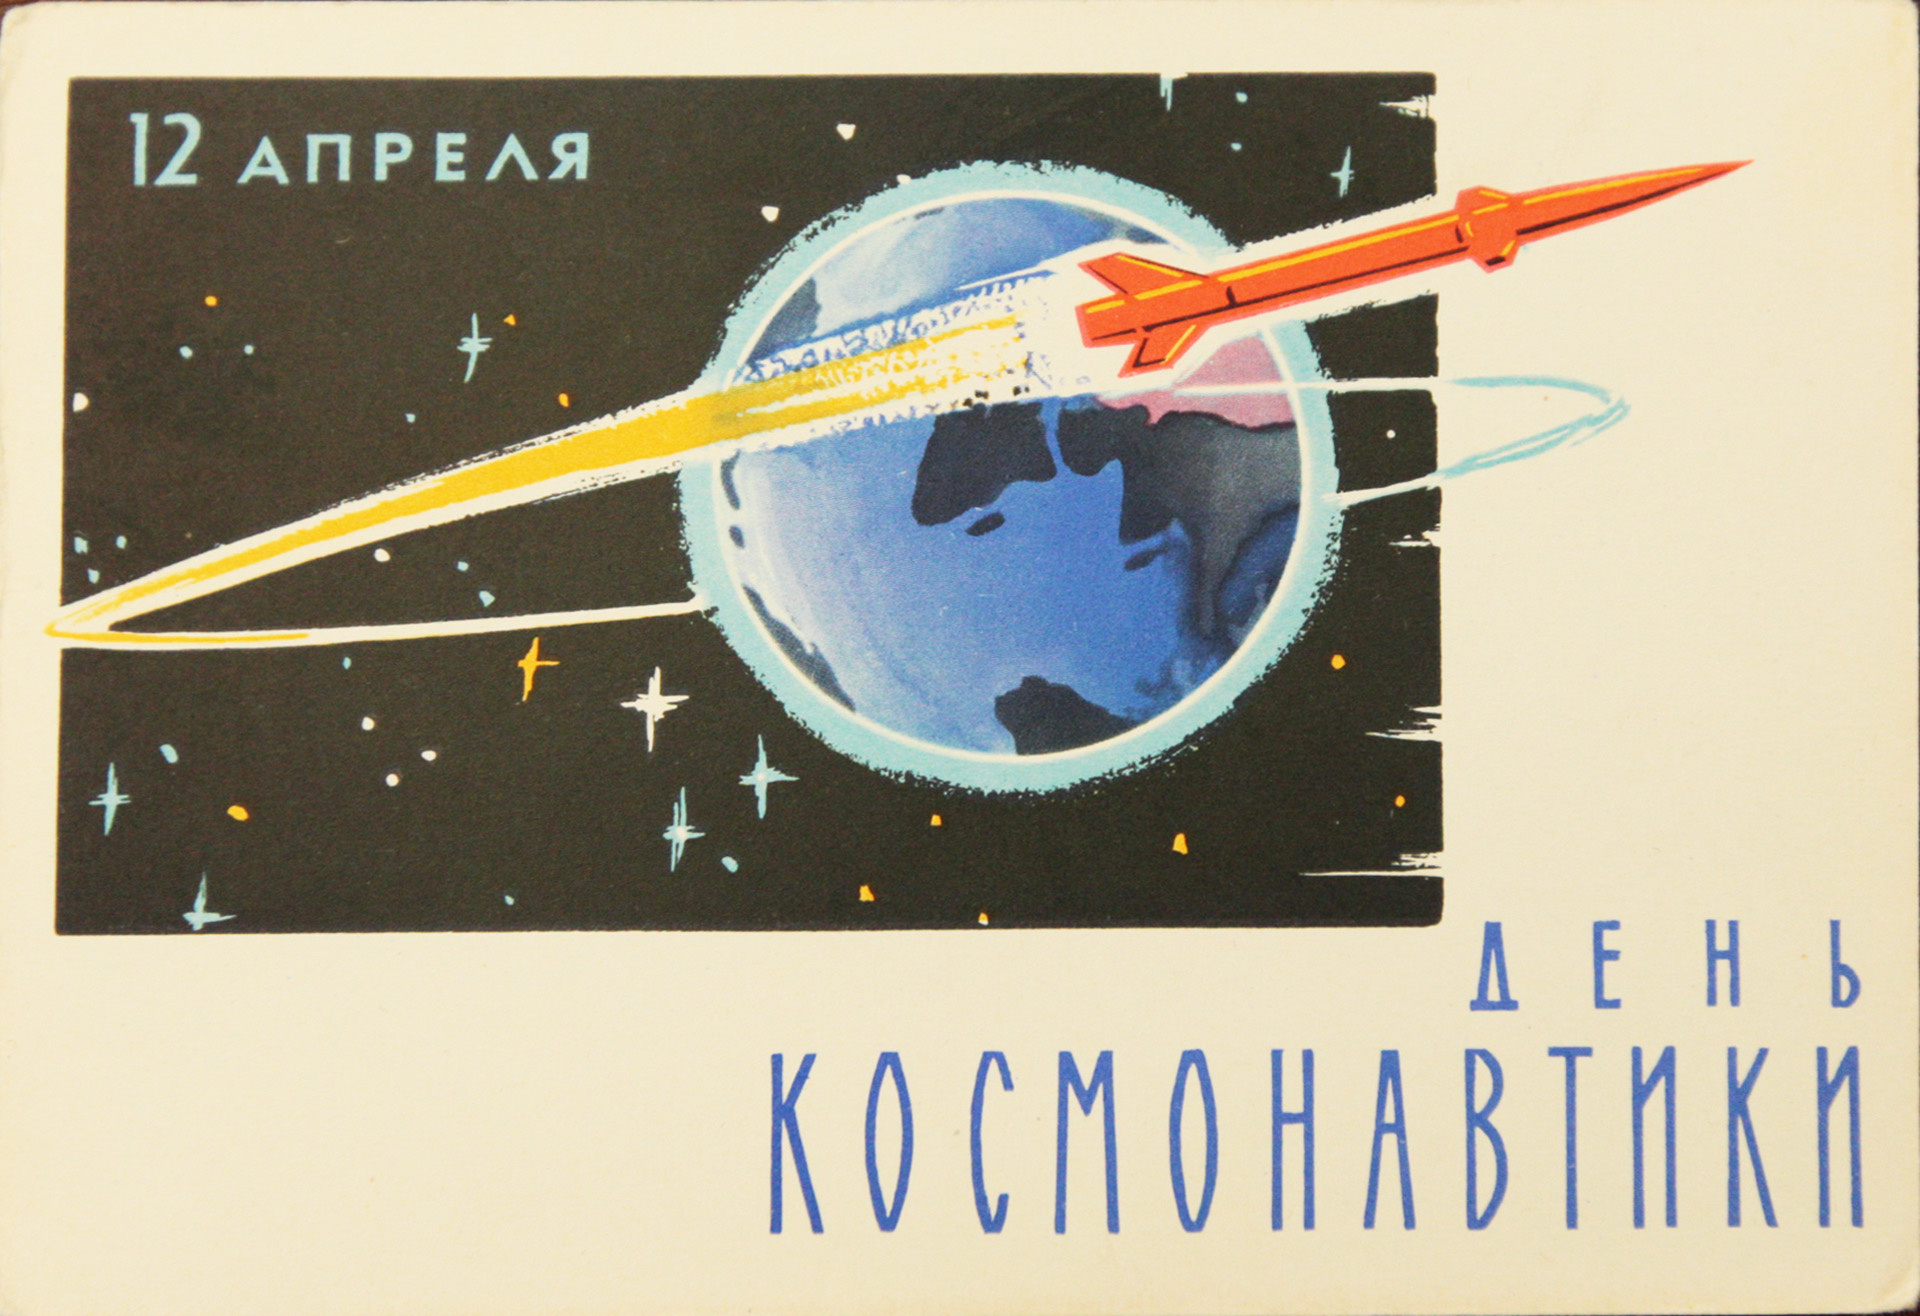 Очень скоро открыток с Днем космонавтики не стало